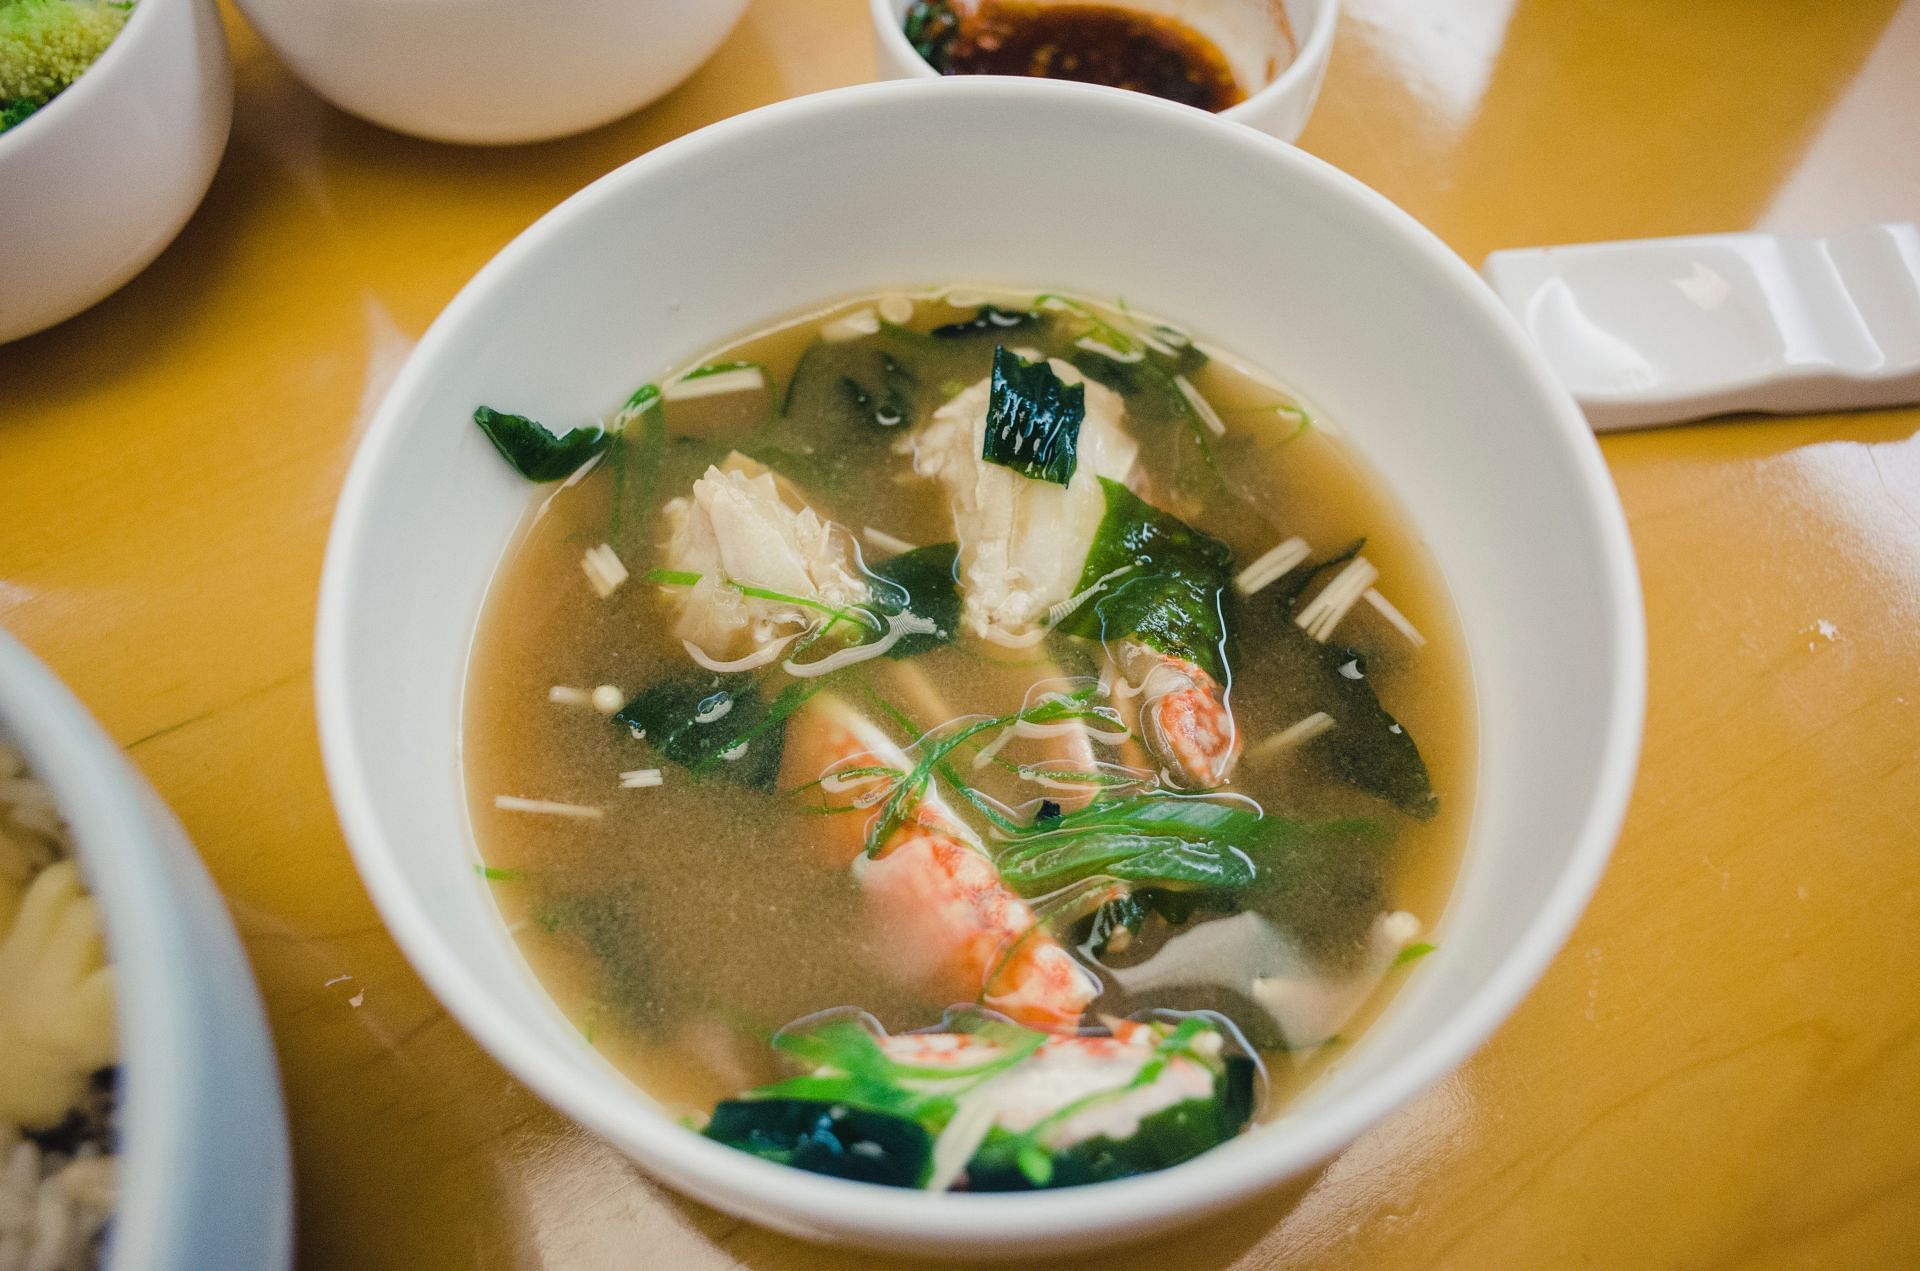 Miso soup is low in calories. (Image via Pexels/Meka Food)